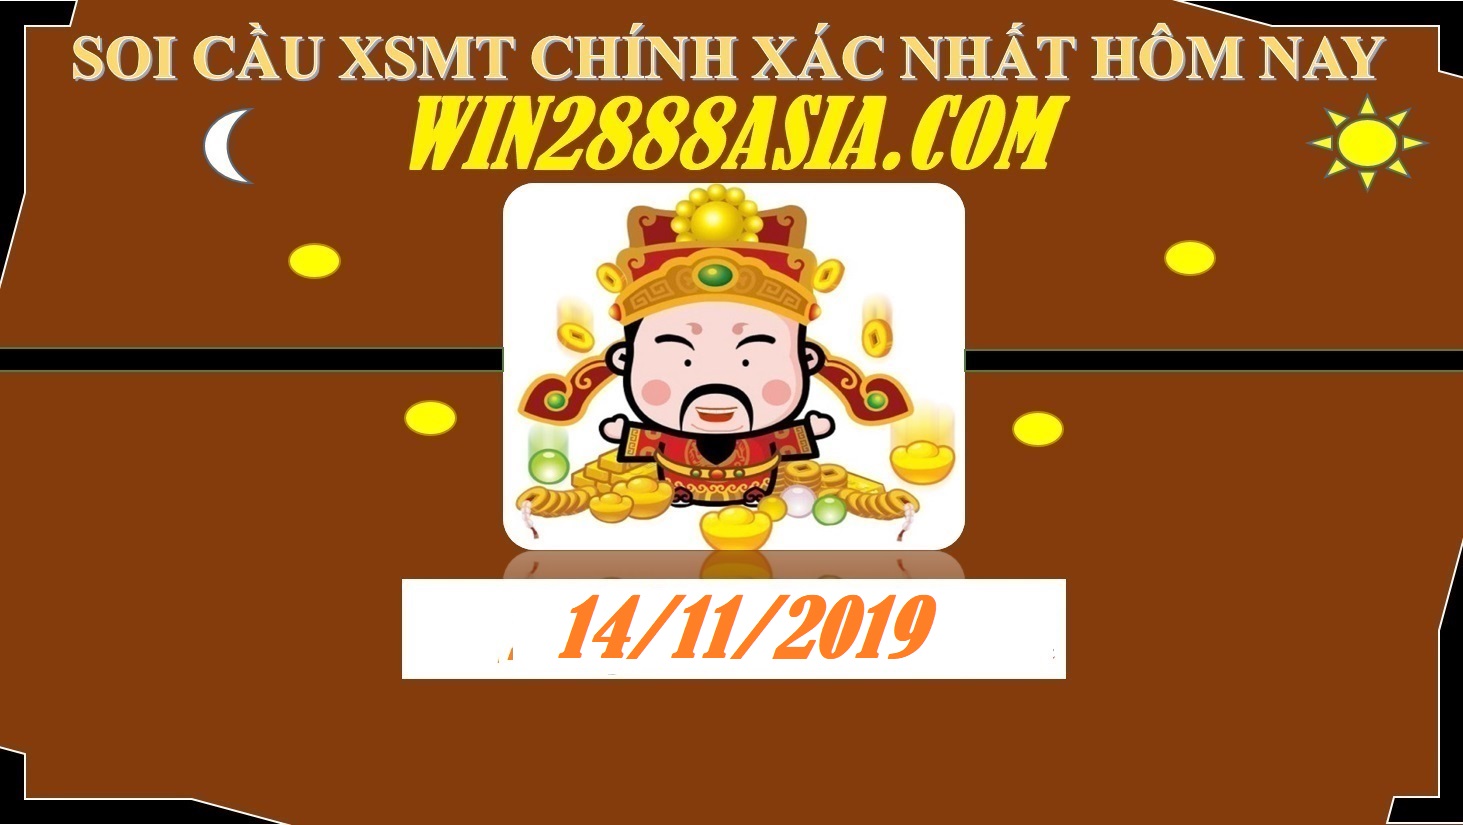 Soi cầu XSMT 14-11-2019 Win2888